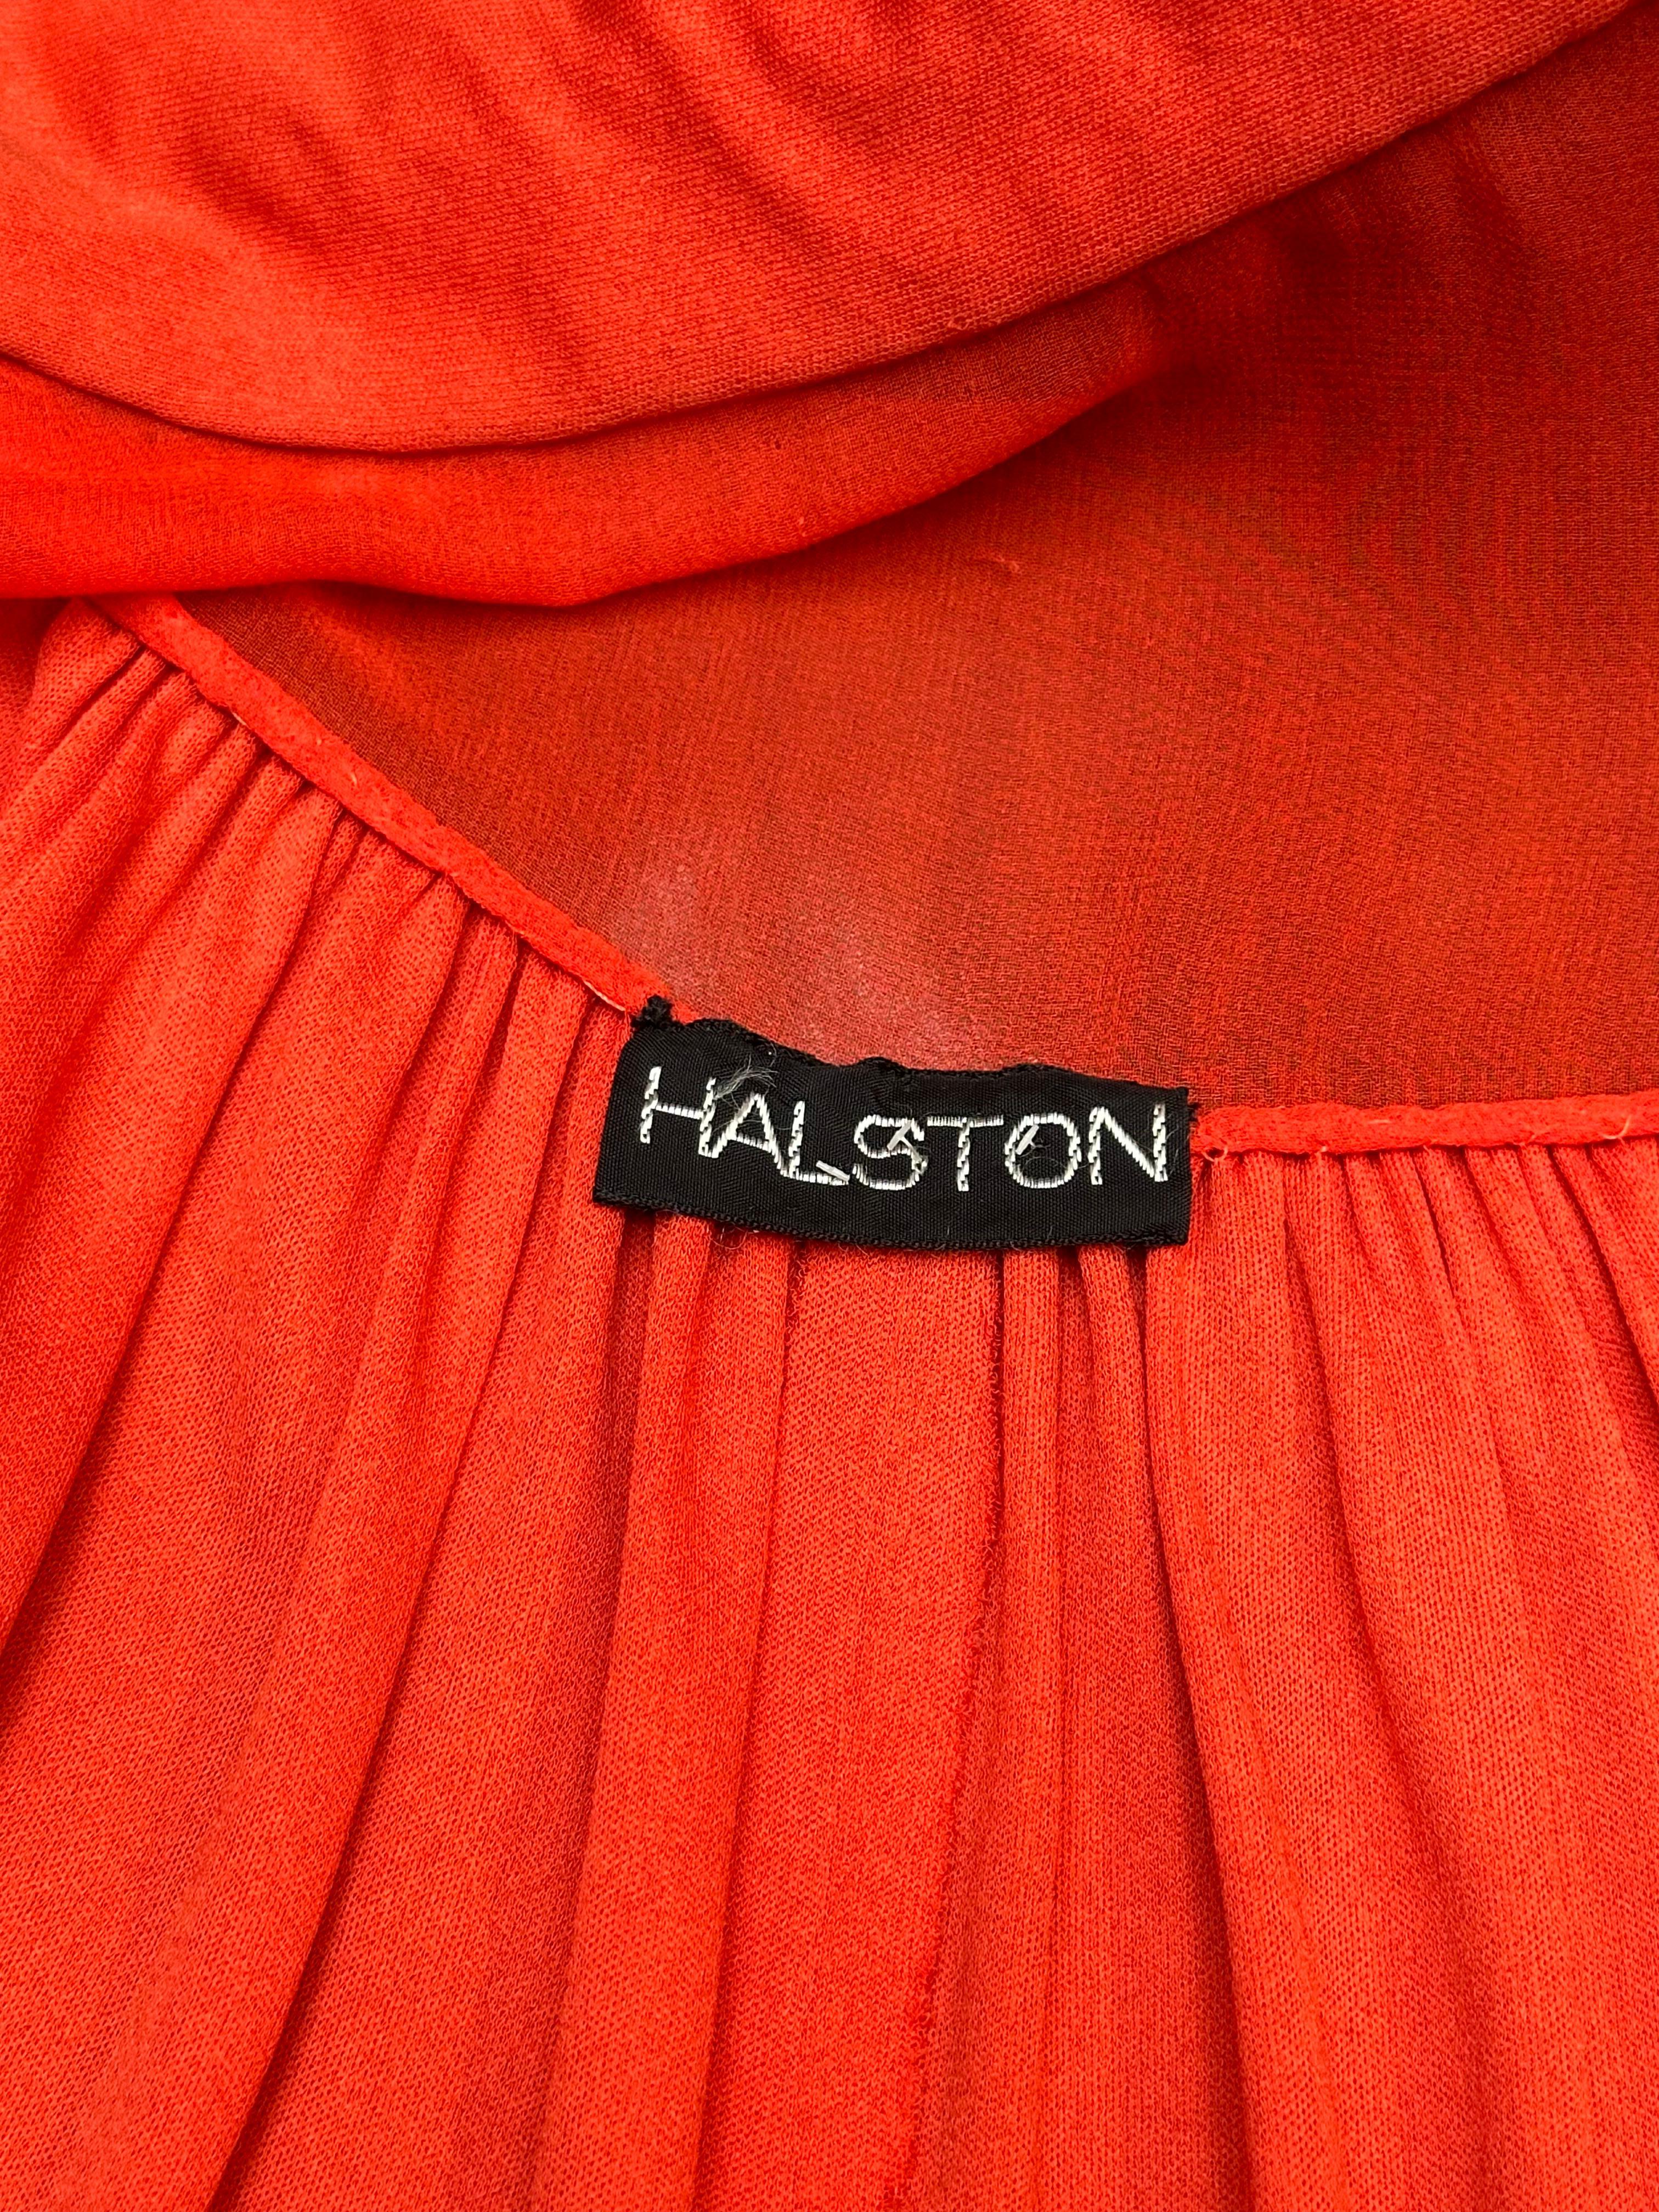 HALSTON Robe dos nu en jersey mat orange avec veste assortie, années 1970 Pour femmes en vente